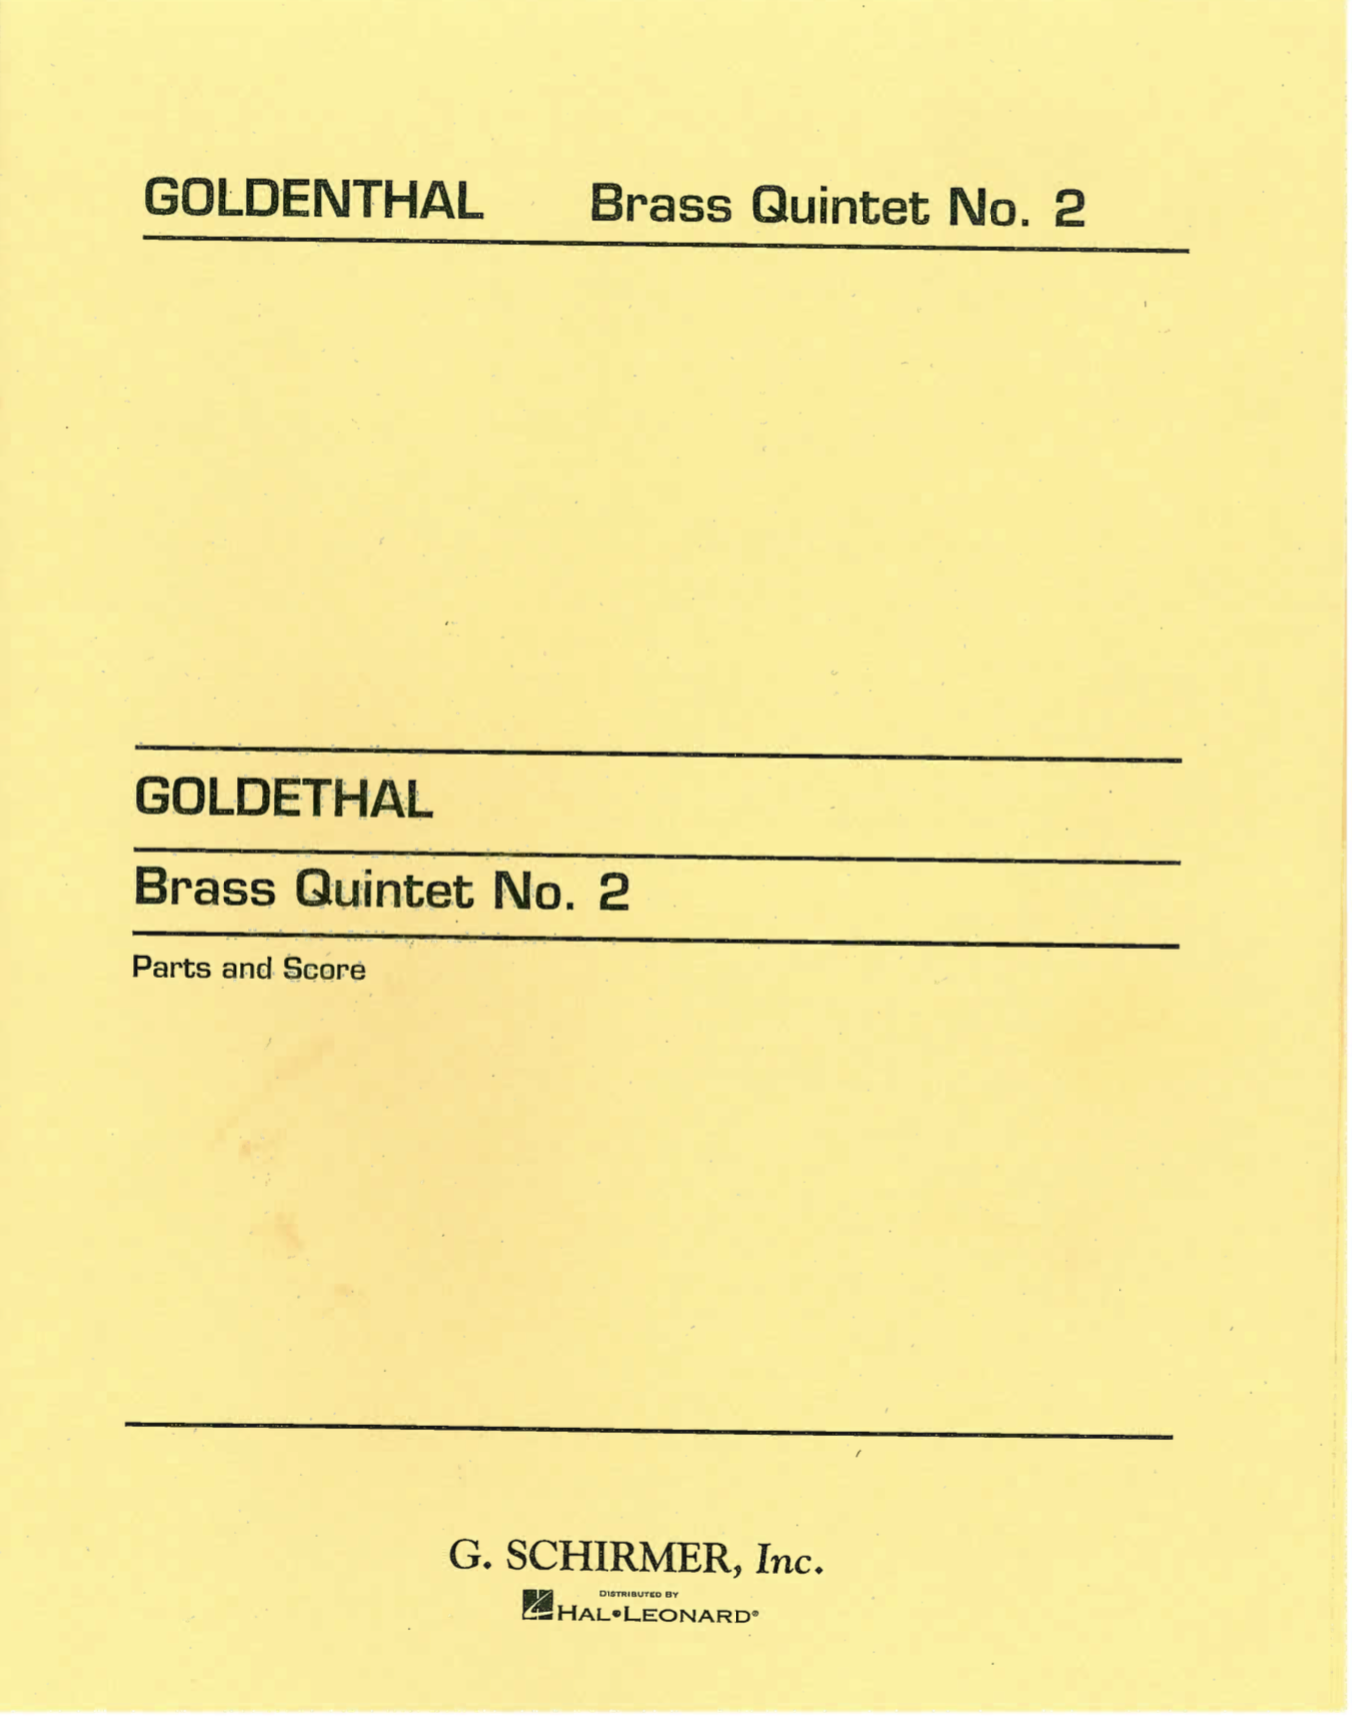 brass quintet 2.png